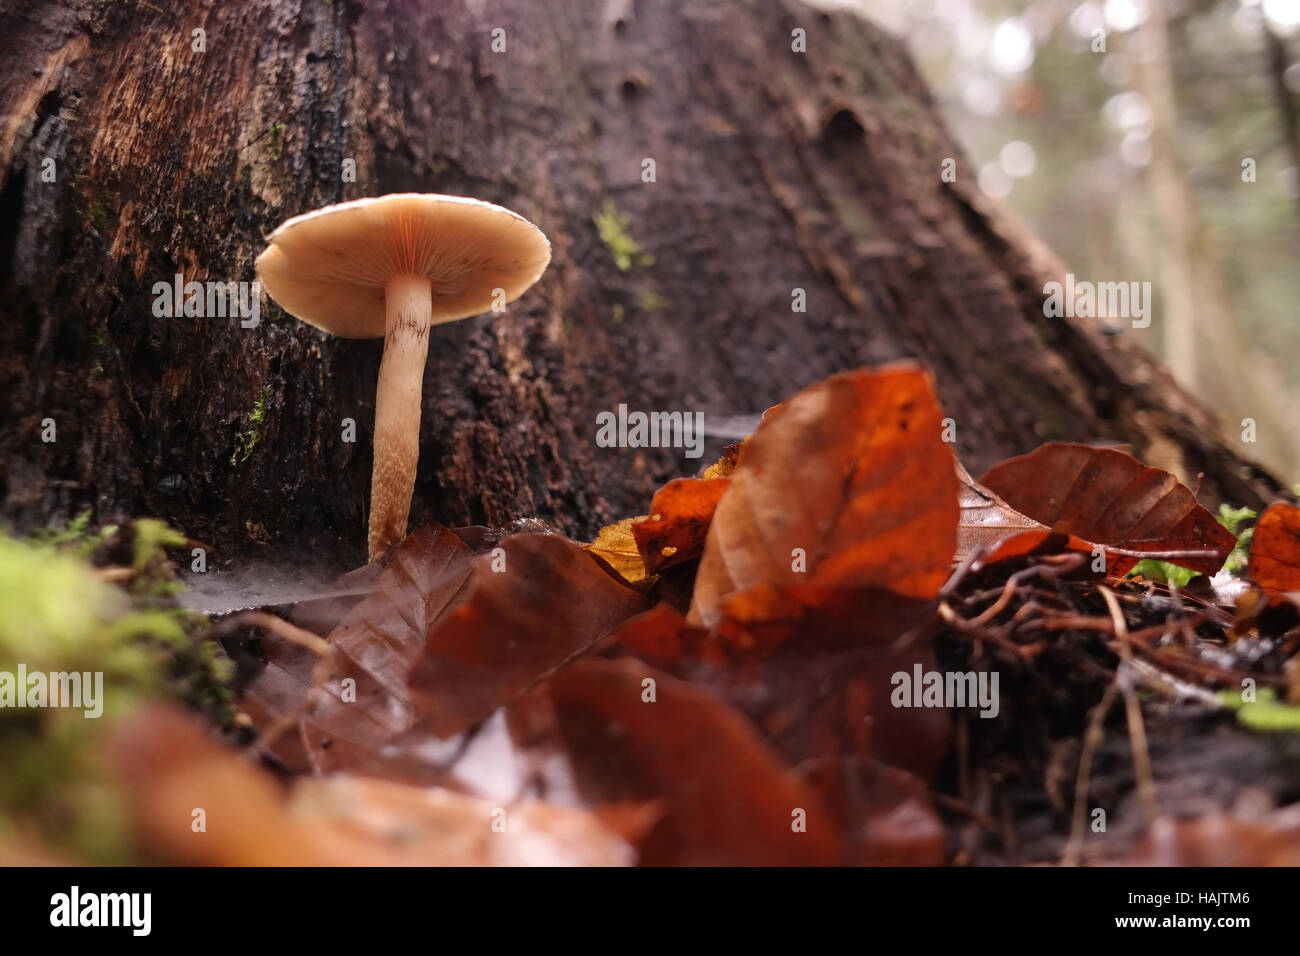 Small mushroom near the tree stump Stock Photo